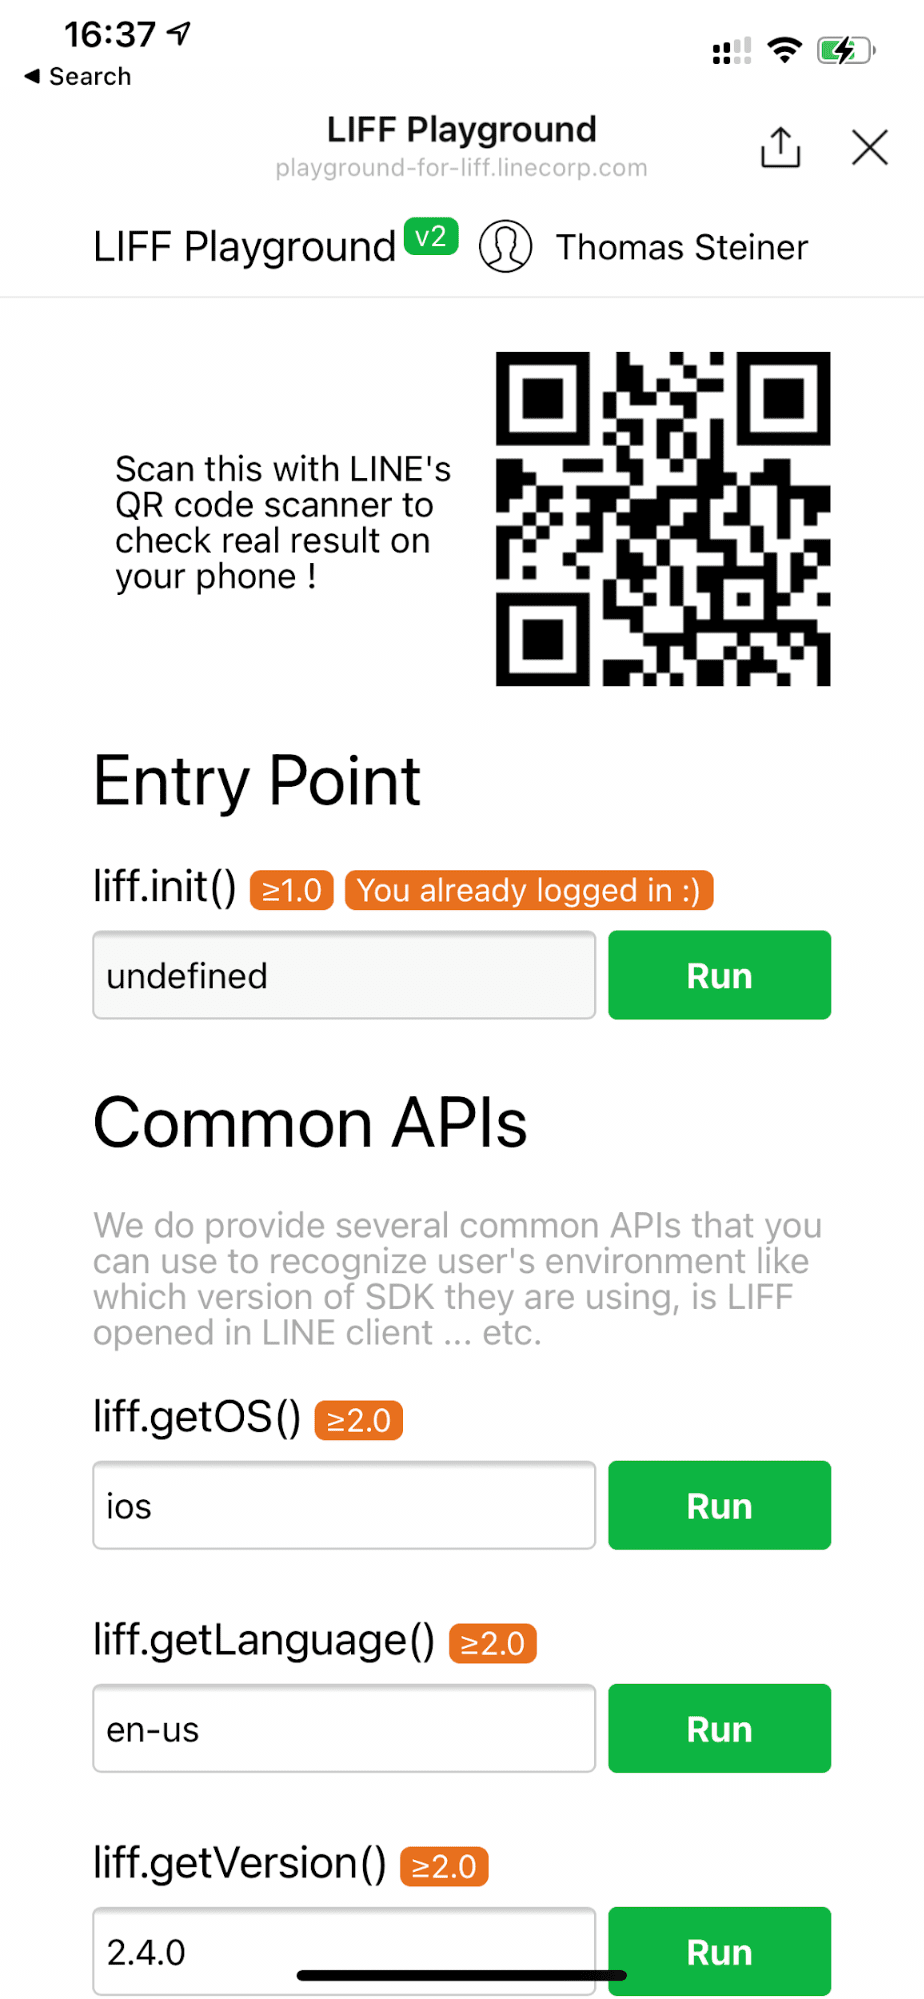 تطبيق LINE Playground التجريبي الذي يعمل على جهاز iOS يعرض `liff.getOS()` الذي يعرض &quot;ios&quot;.